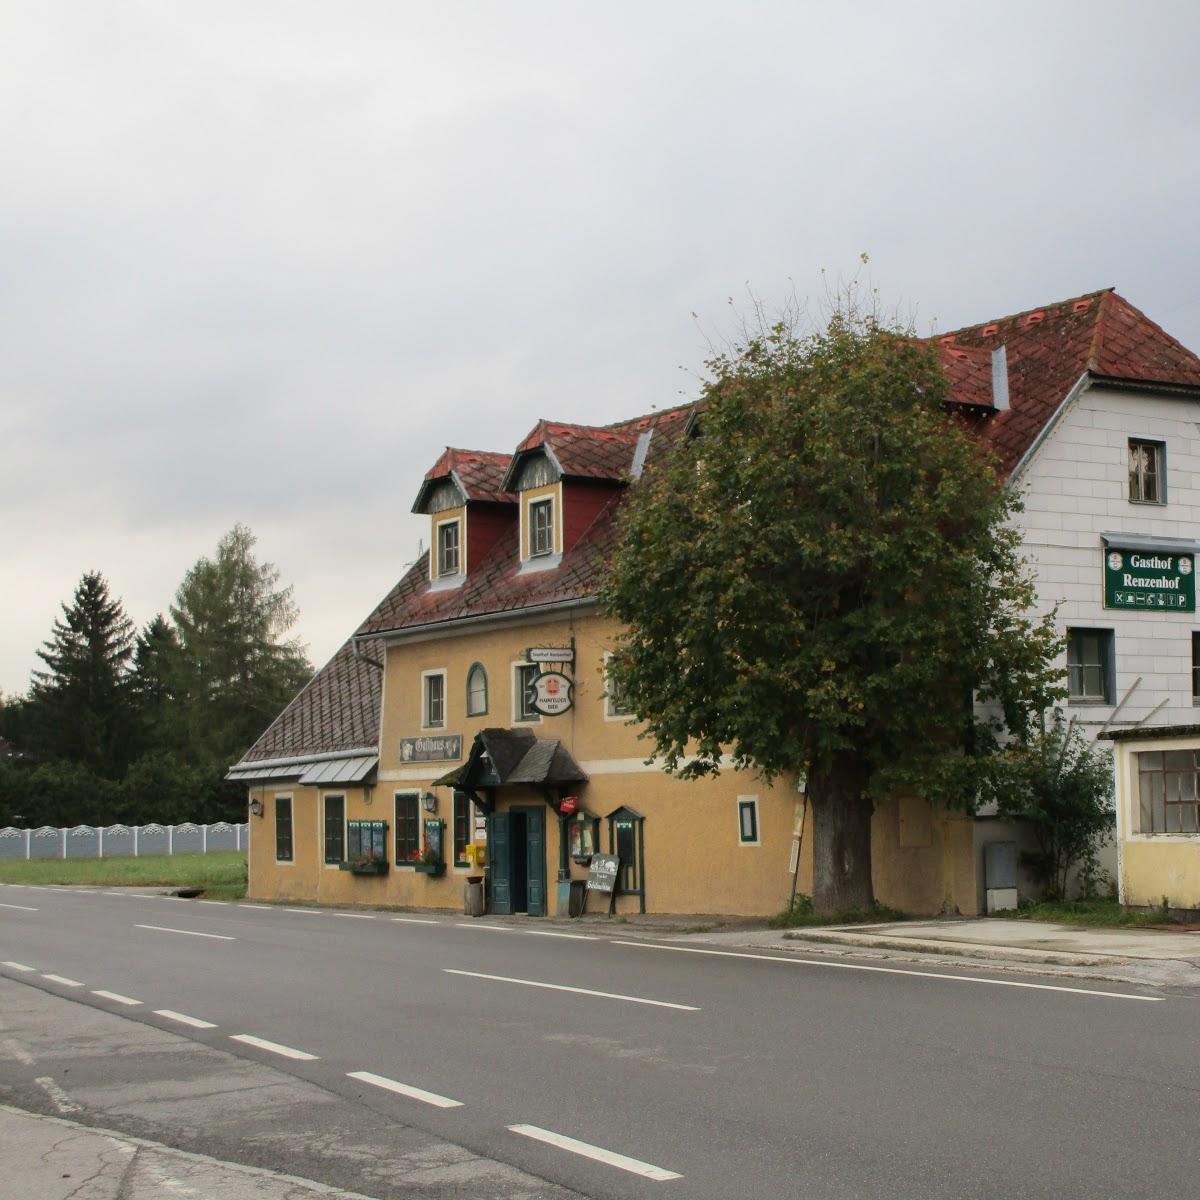 Restaurant "Renzenhof" in Untertriesting